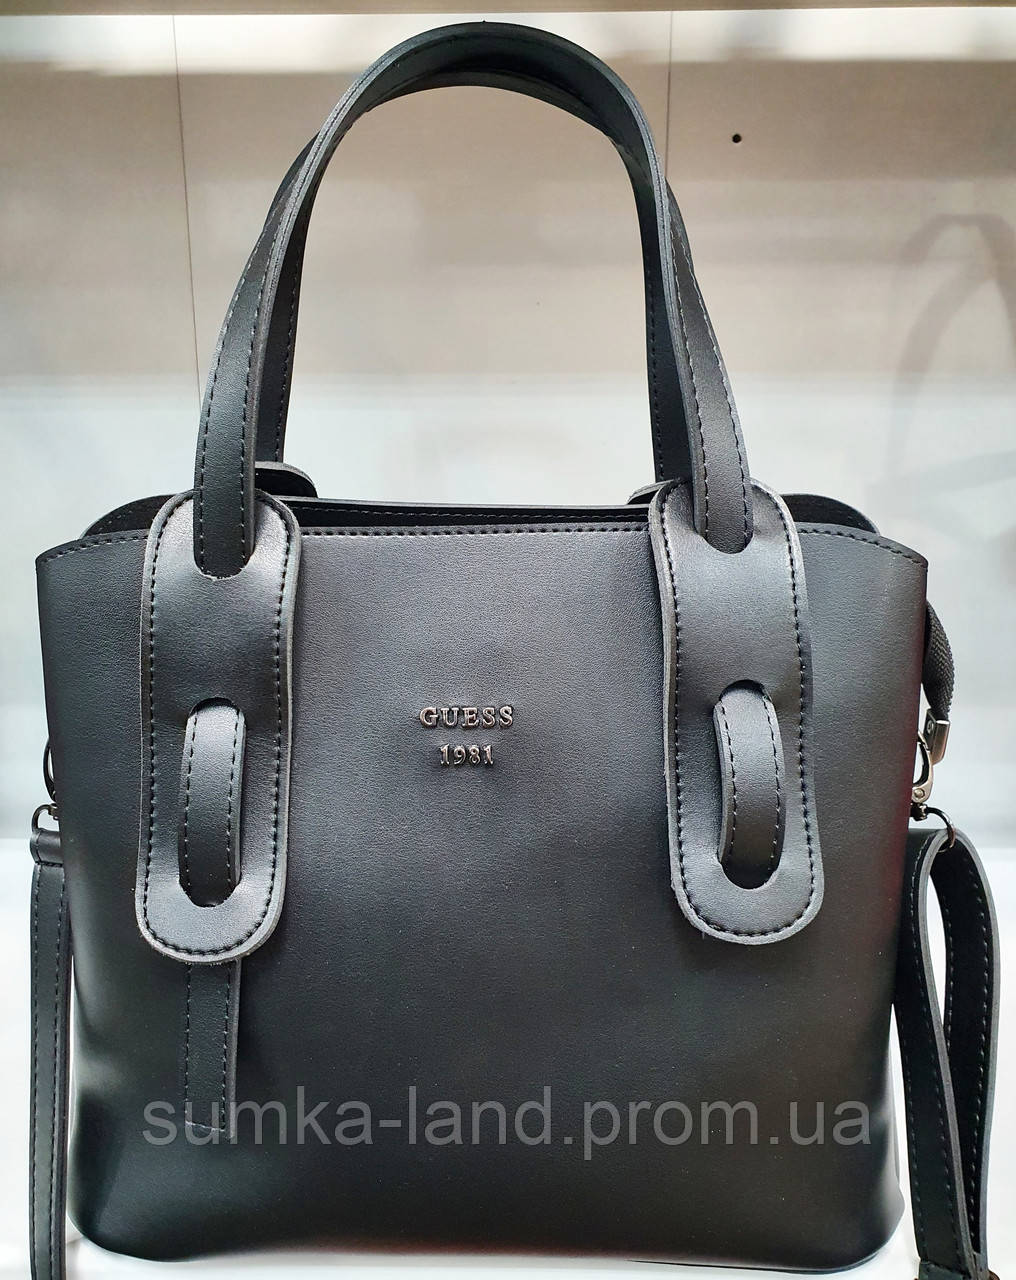 Женская черная сумка Dior из турецкой эко-кожи с карманами на магнитах по бокам 28*23 см